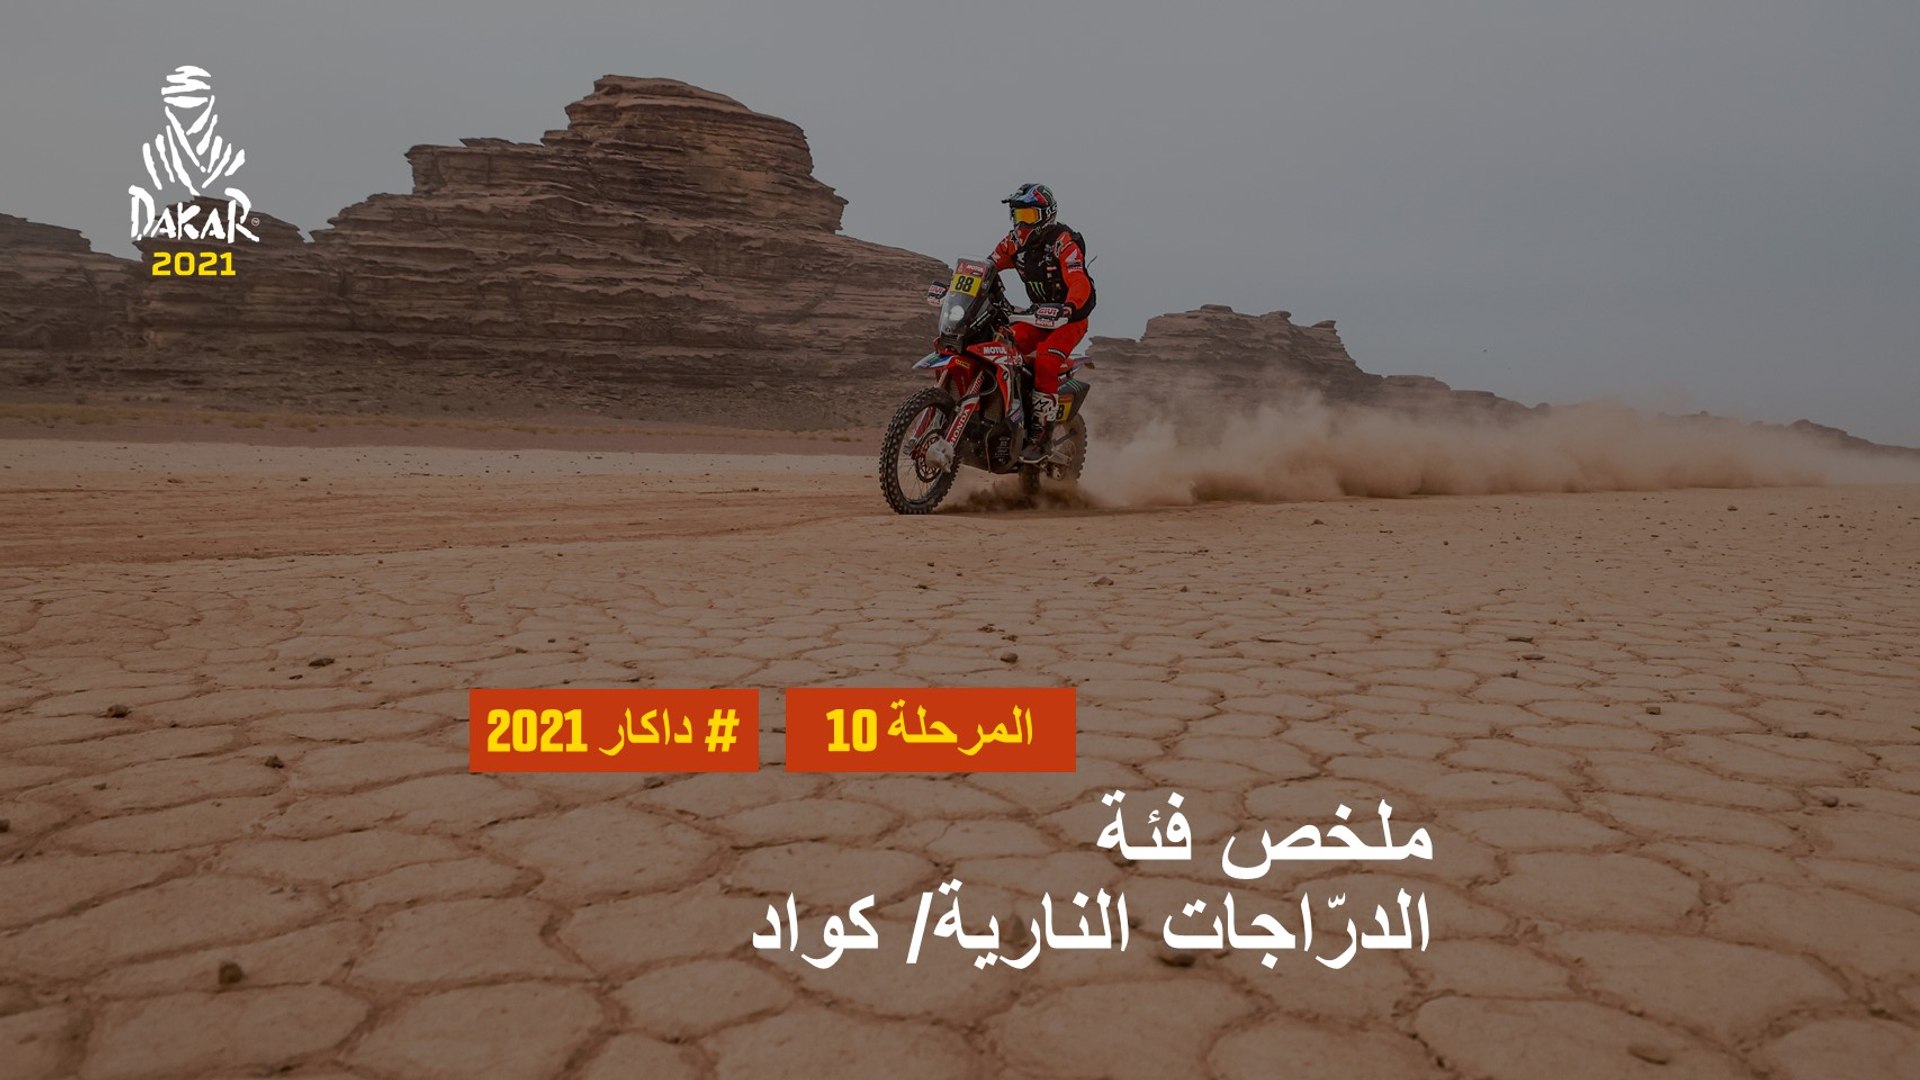 داكار 2021 - المرحلة 10 - Neom / AlUla - ملخص فئة الدرّاجات النارية/ كواد -  Vidéo Dailymotion